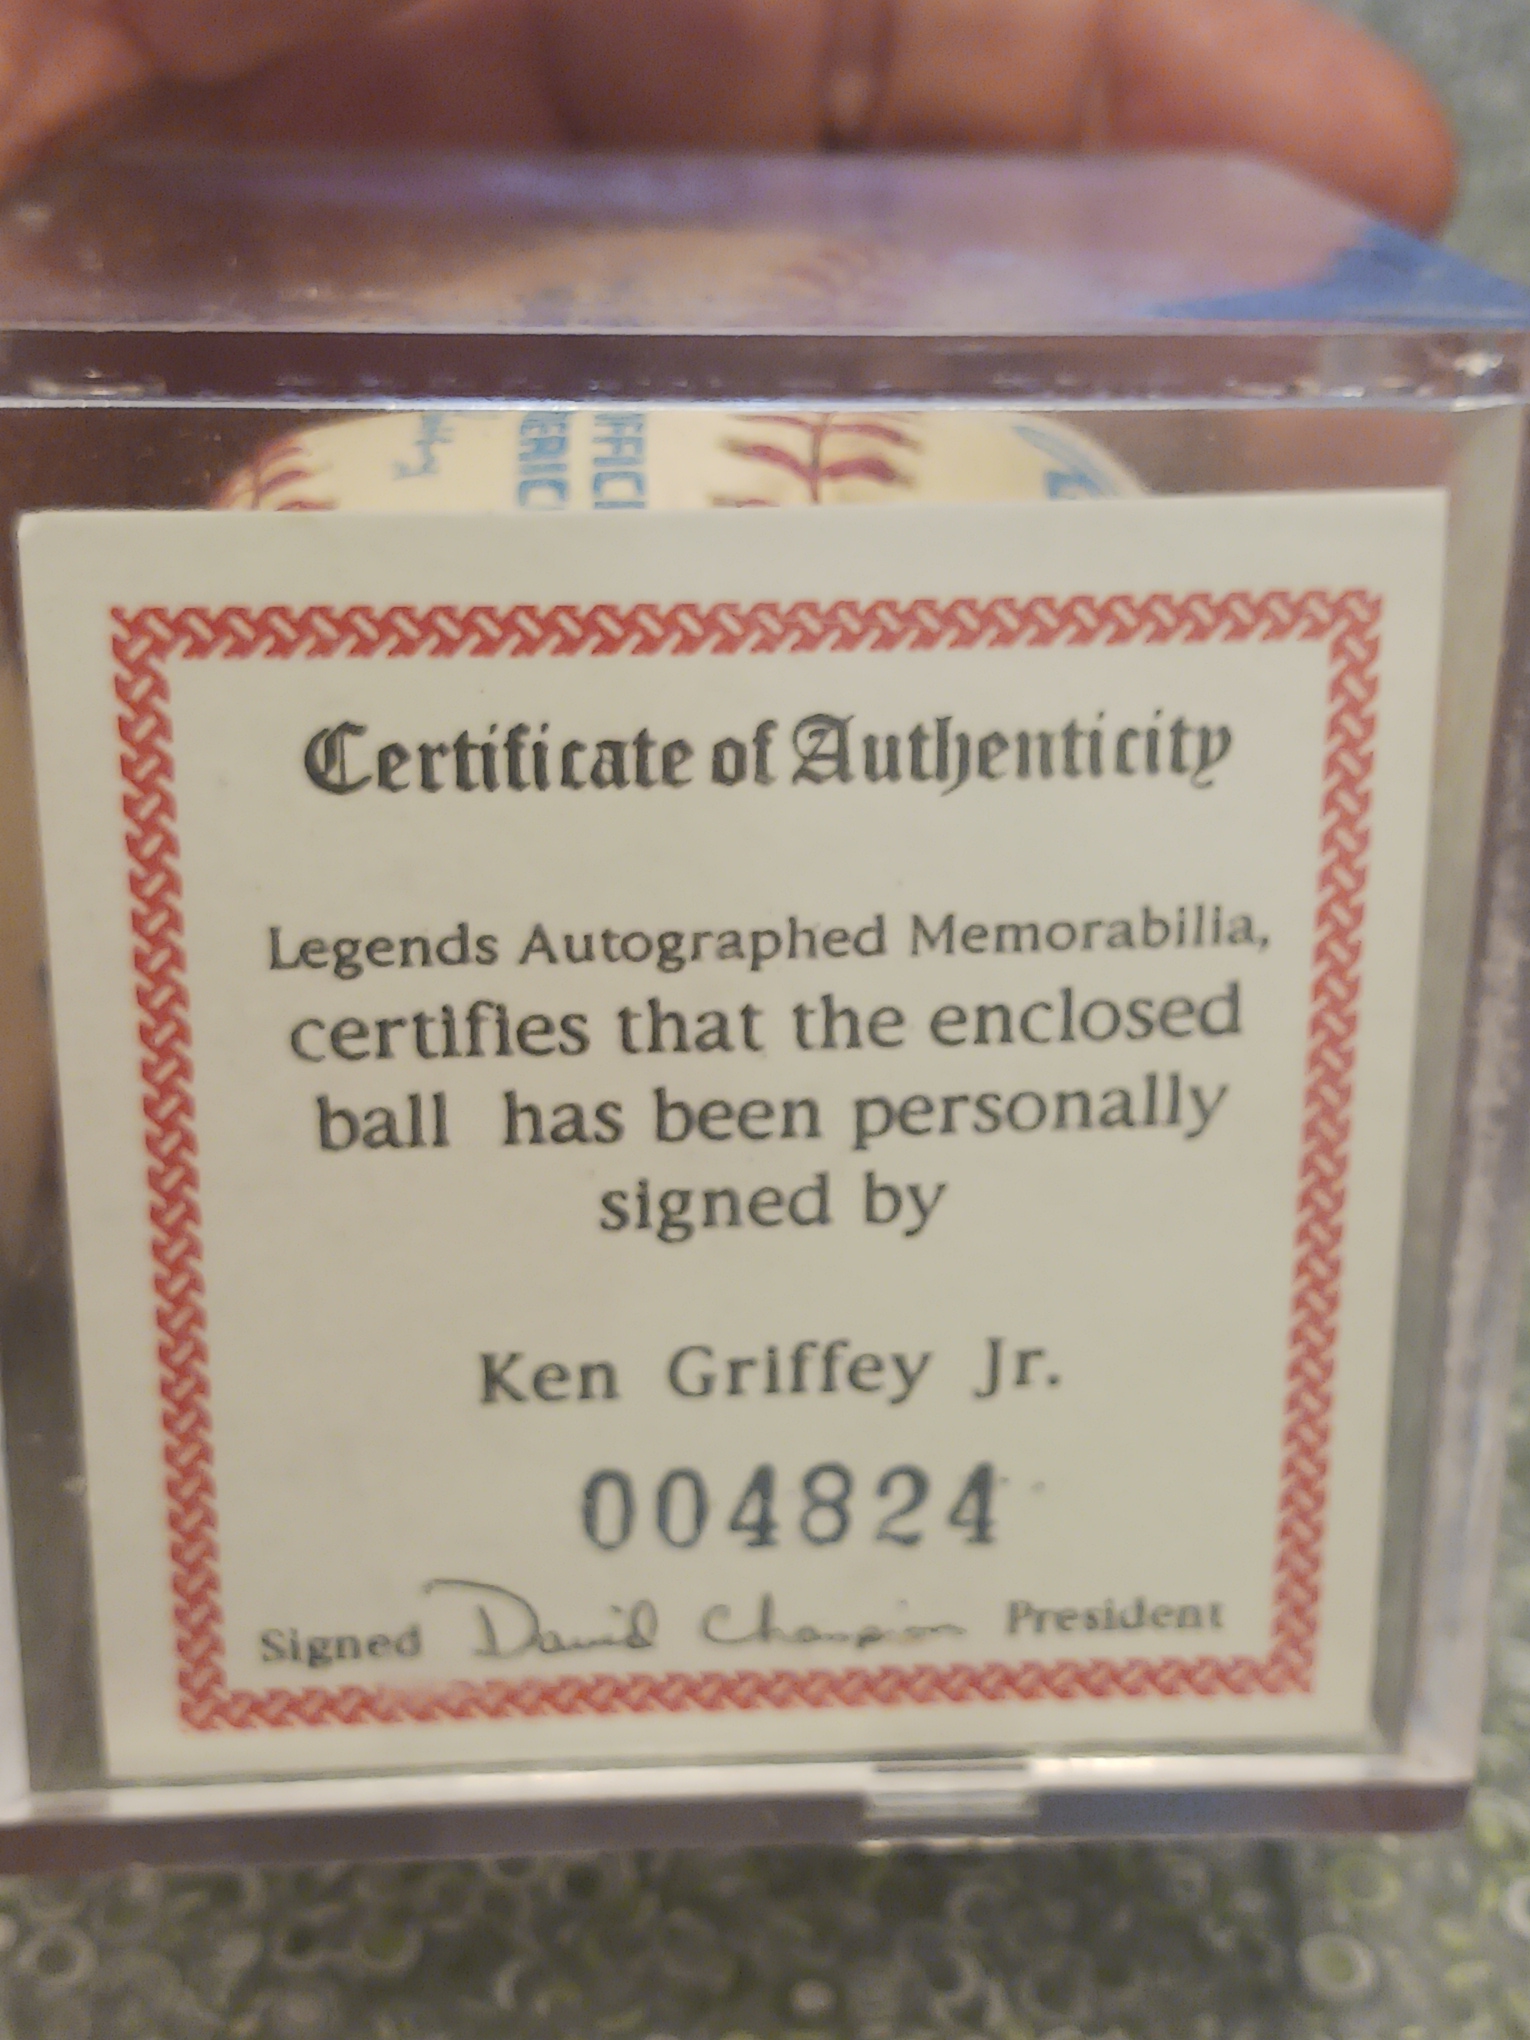 Rawlings, signed by Ken Griffery Jr.